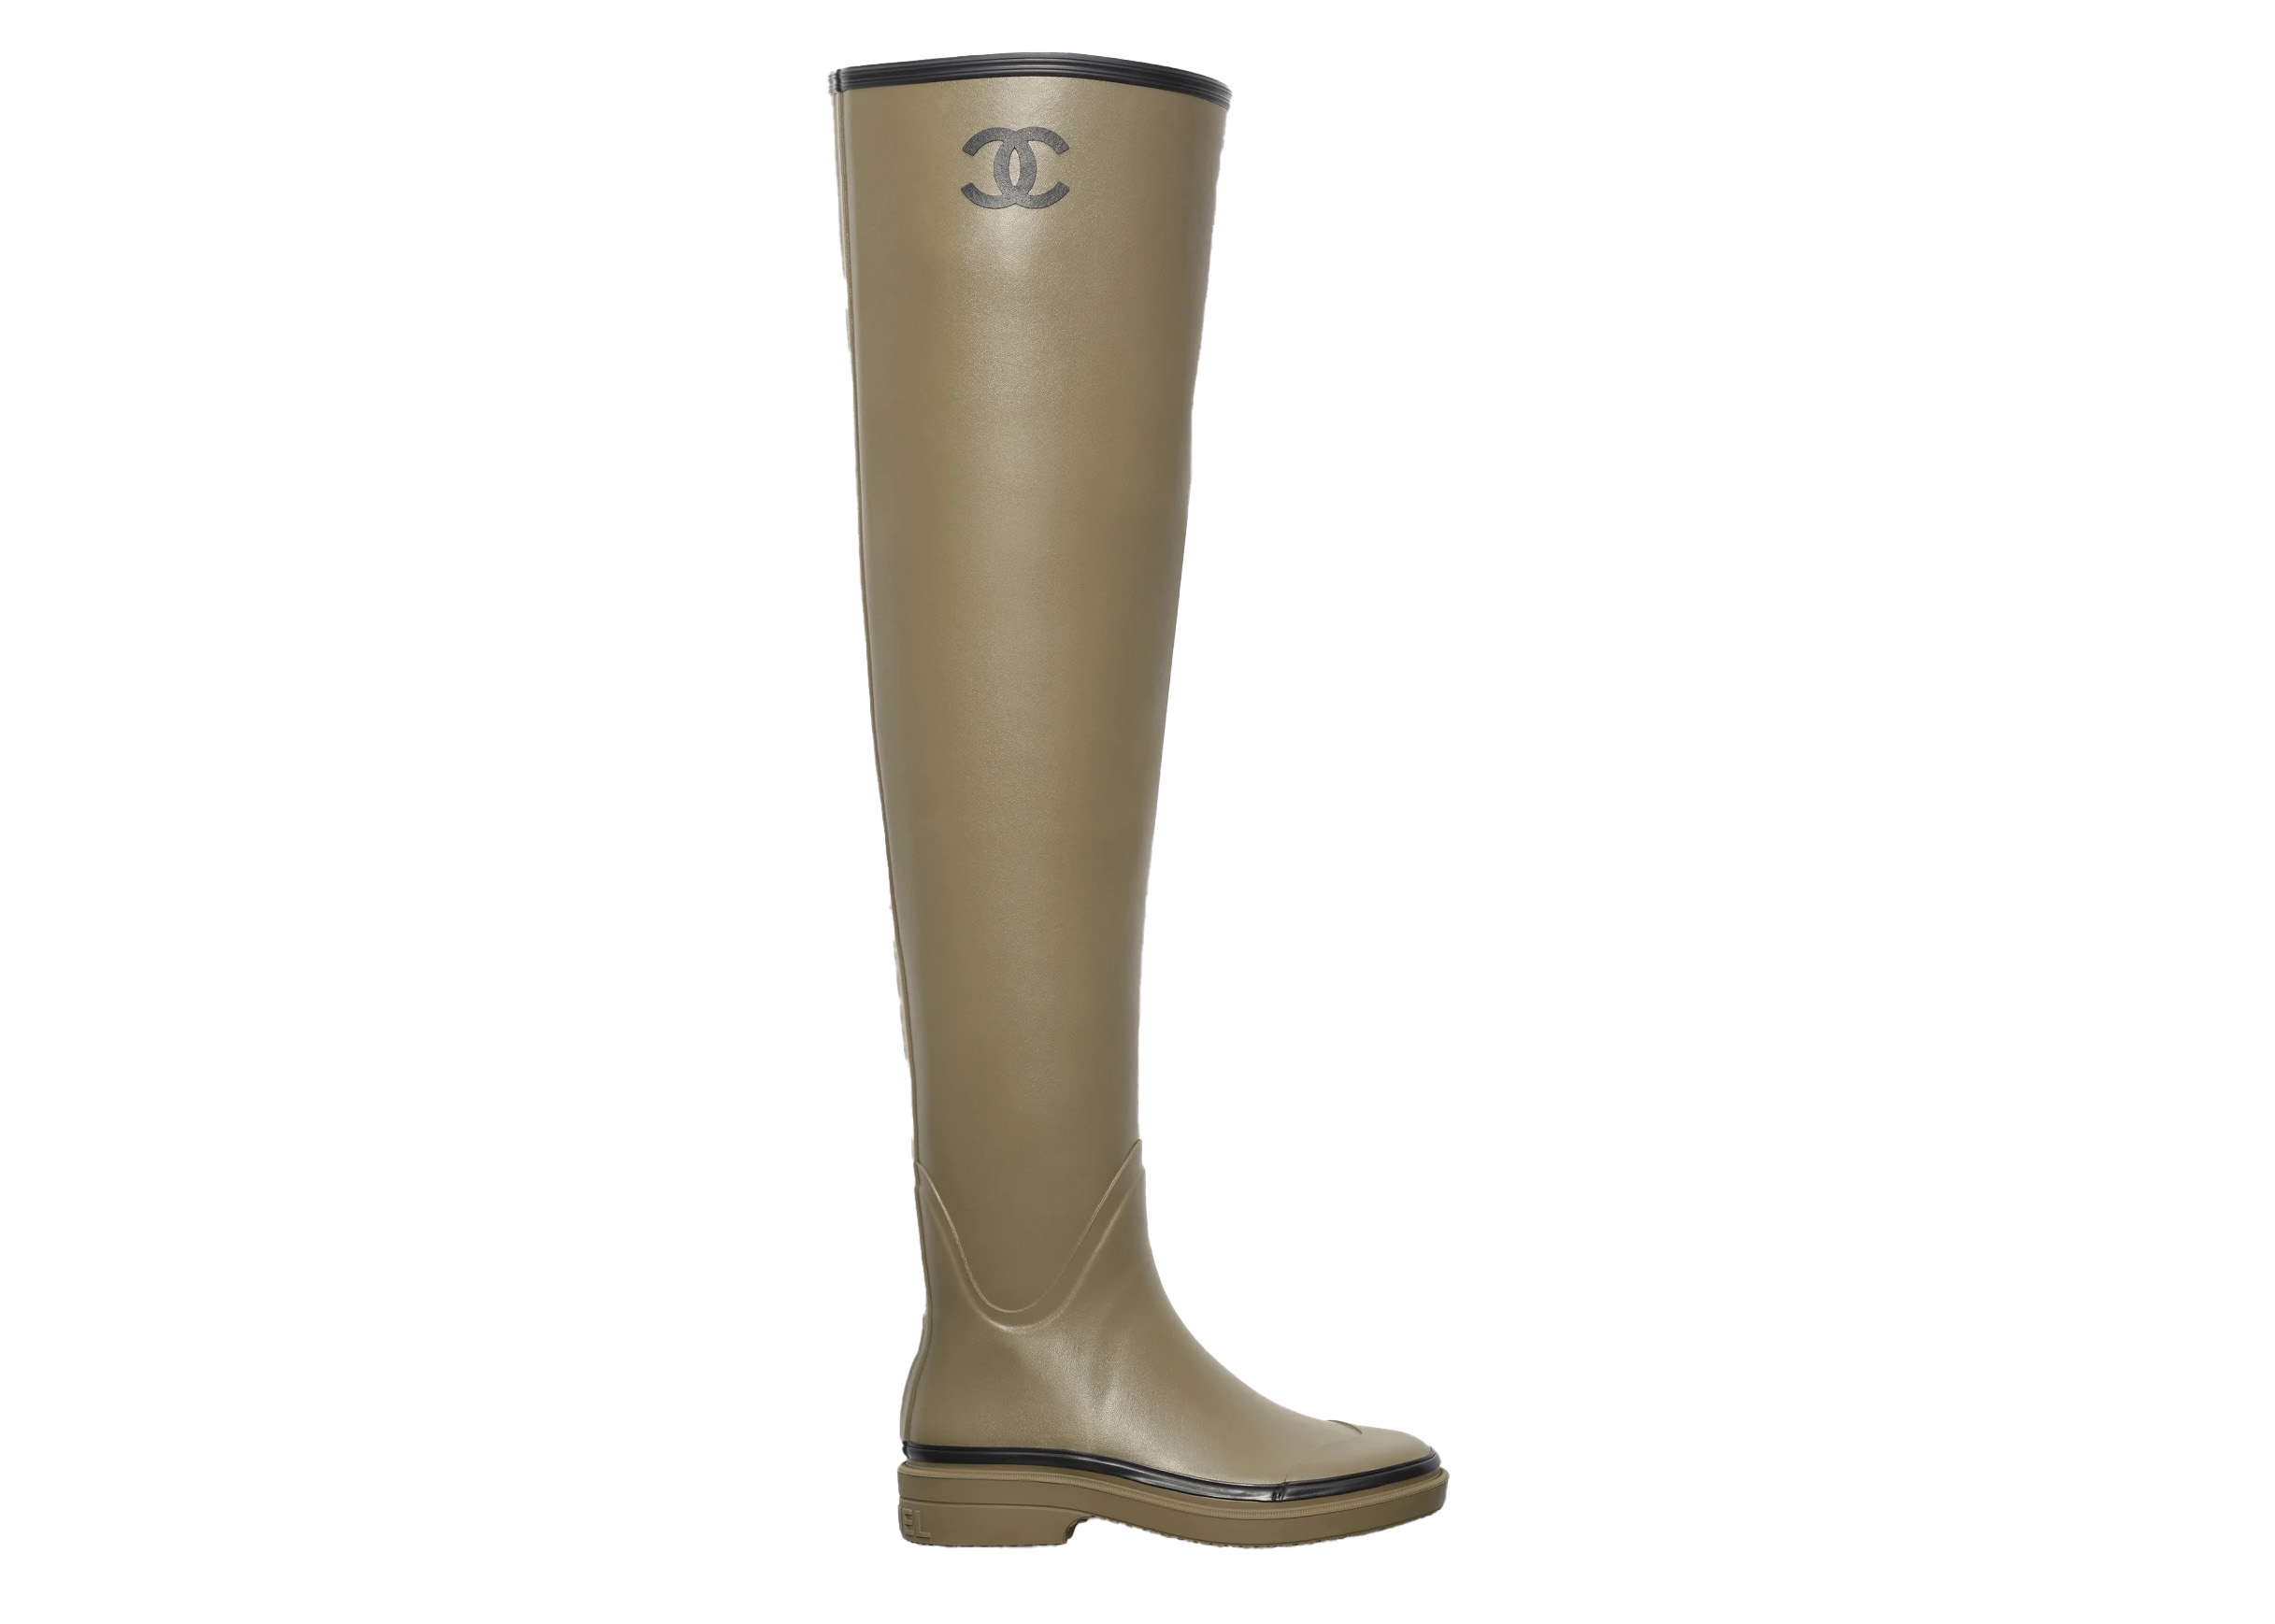 Chanel Thigh High Rubber Rain Boots Dark Beige - G39625 